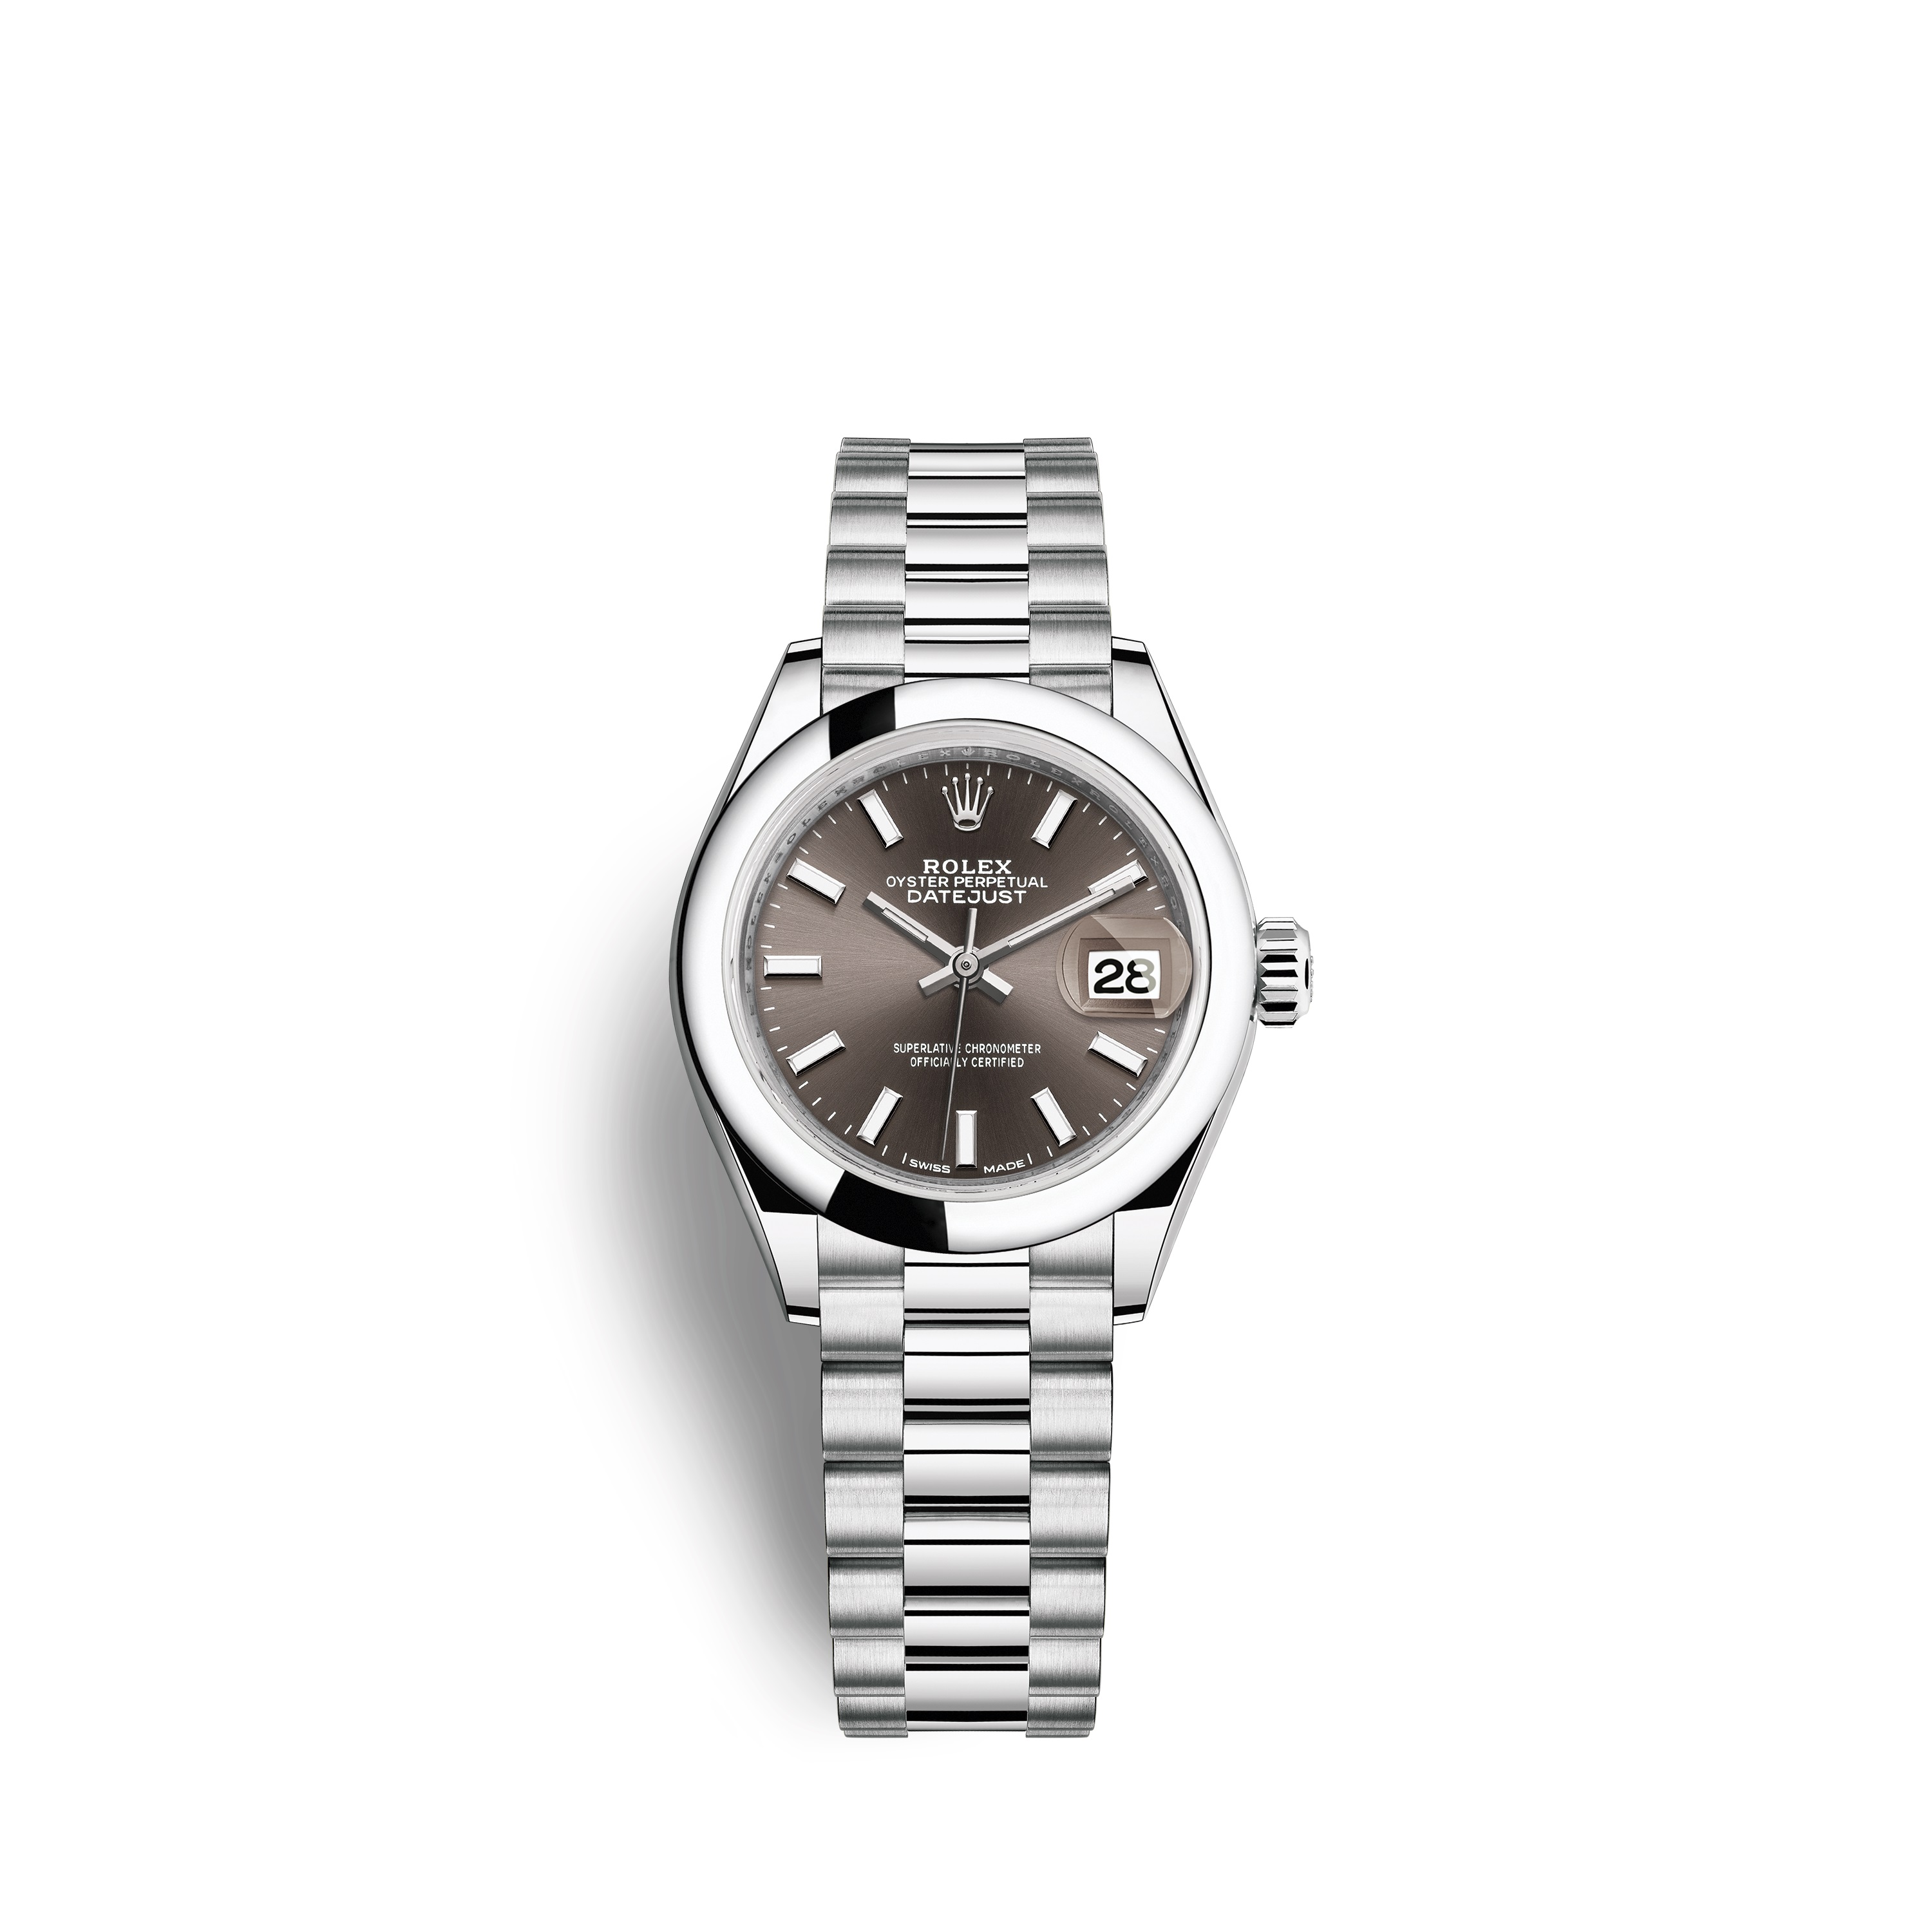 Lady-Datejust 28 279166 Platinum Watch (Dark Grey)